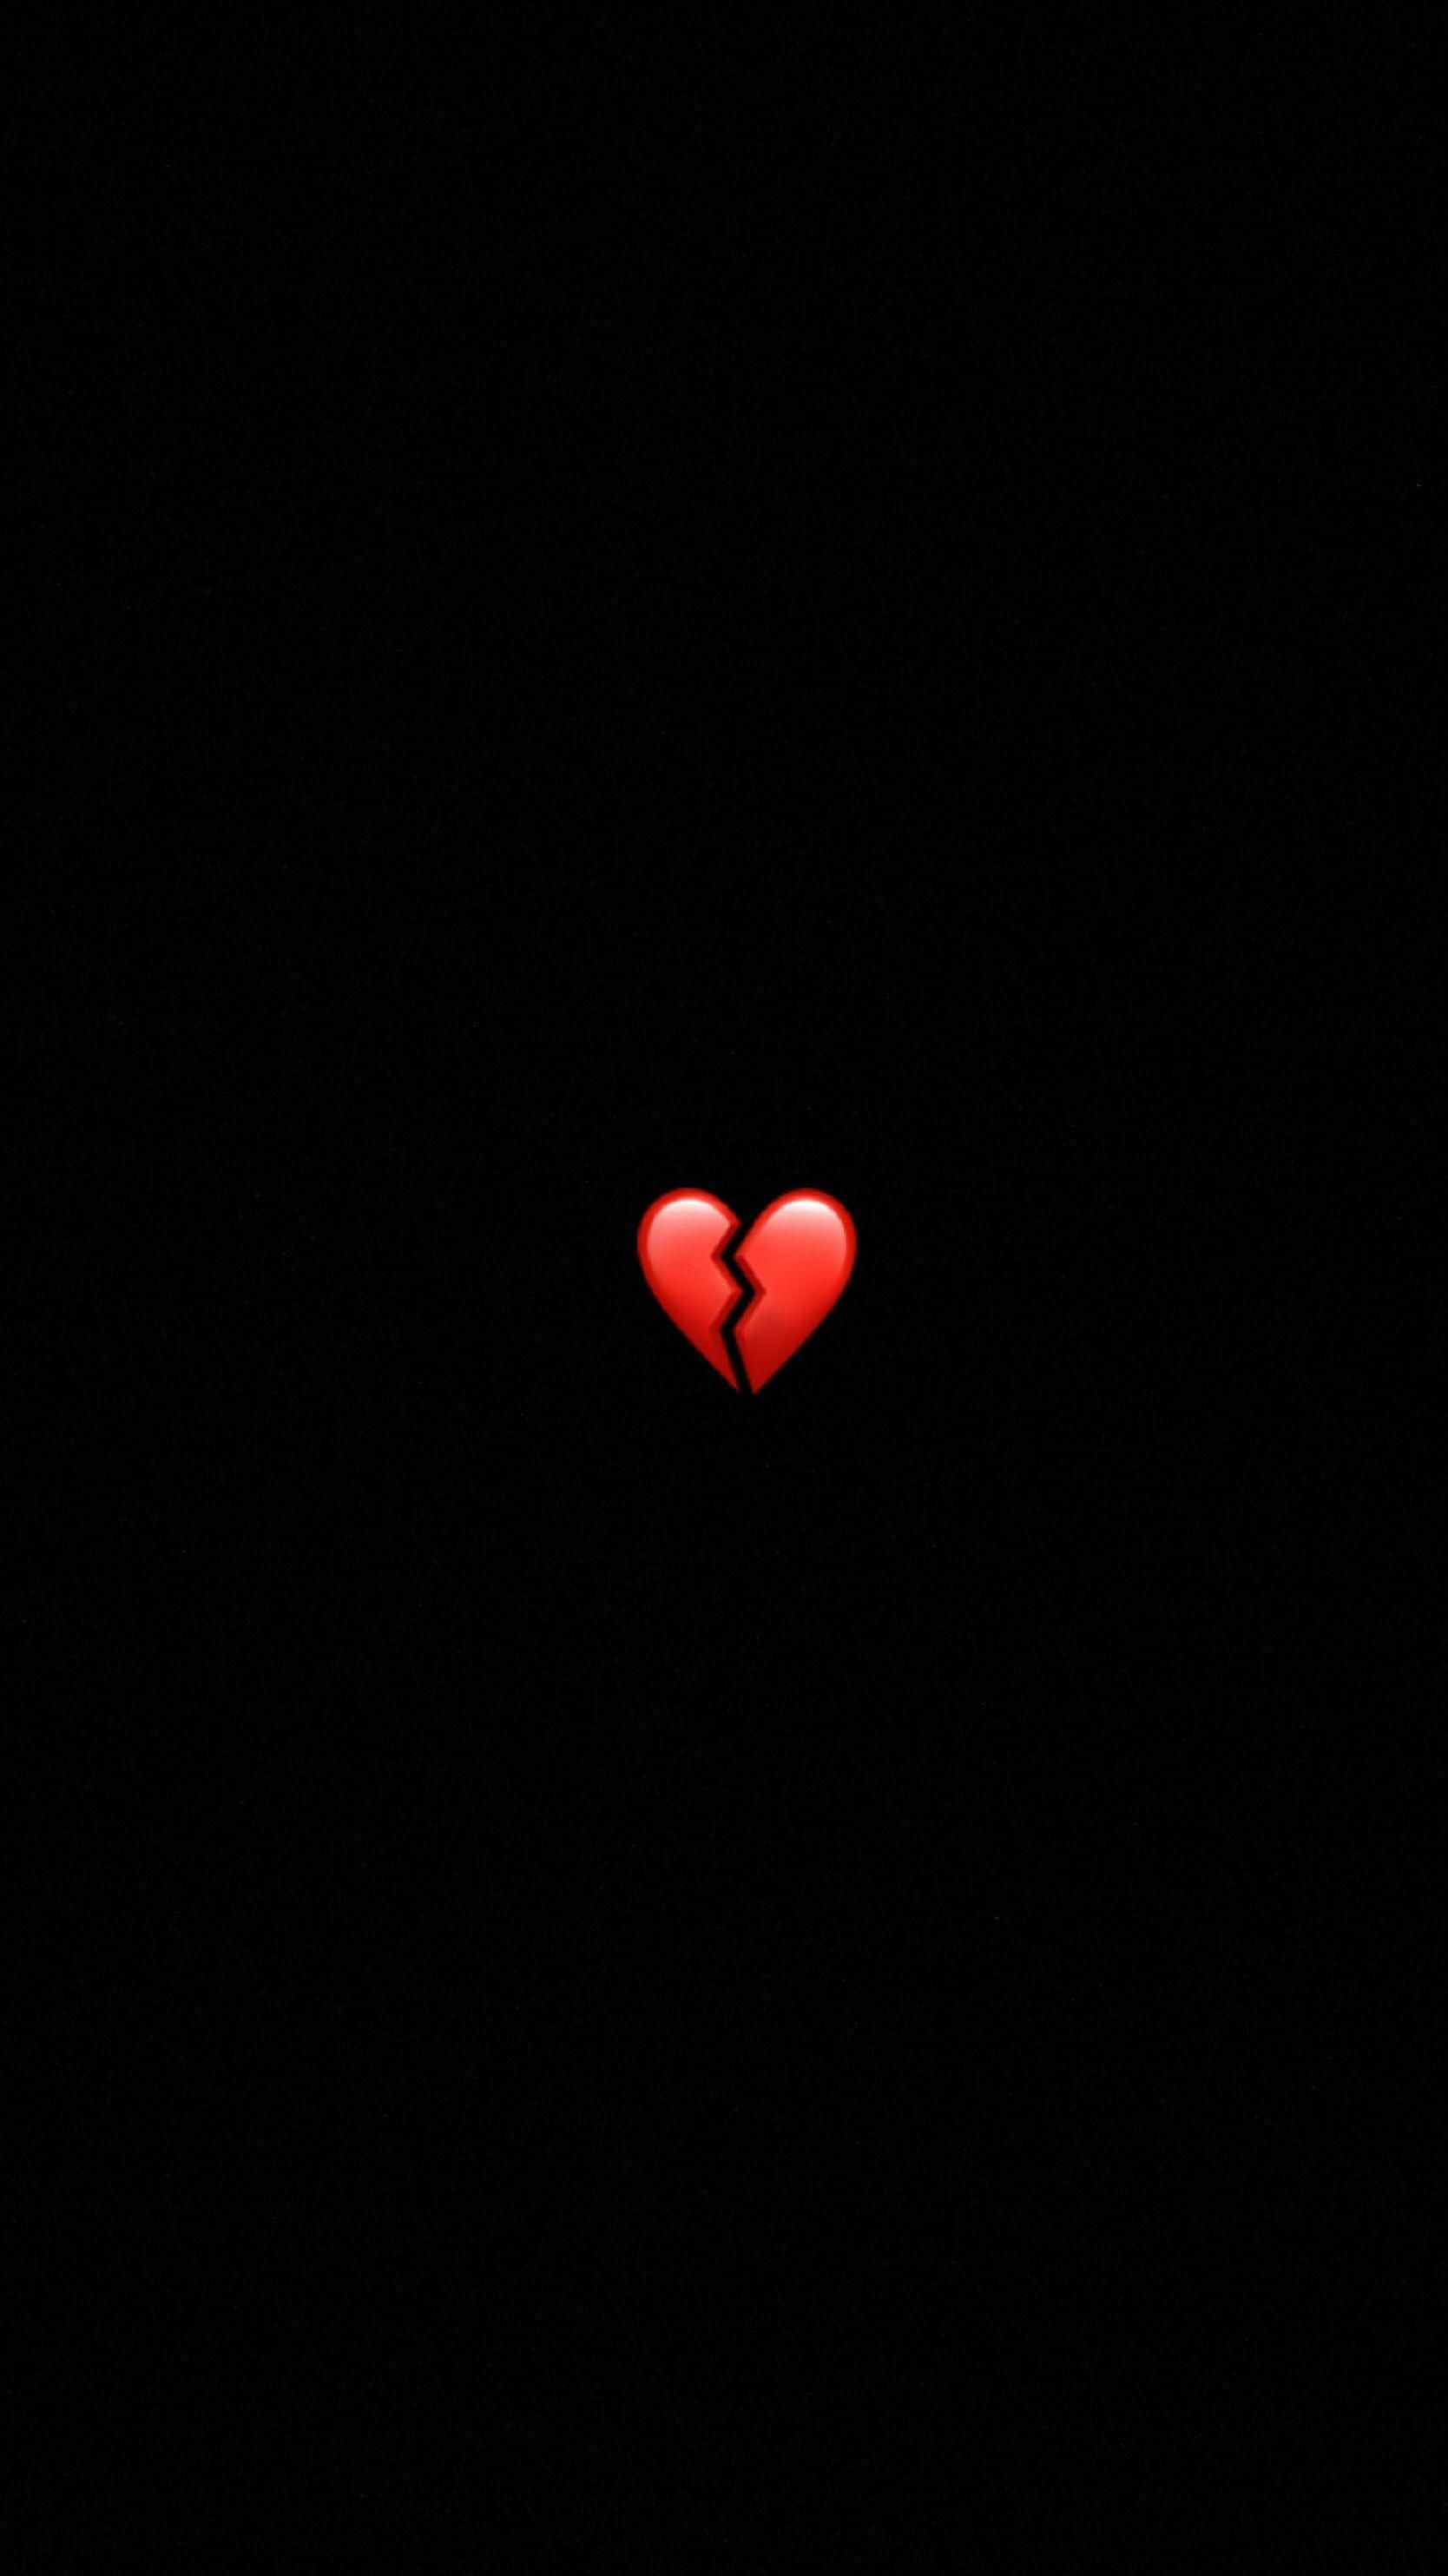 A broken heart is shown in the dark - Black heart